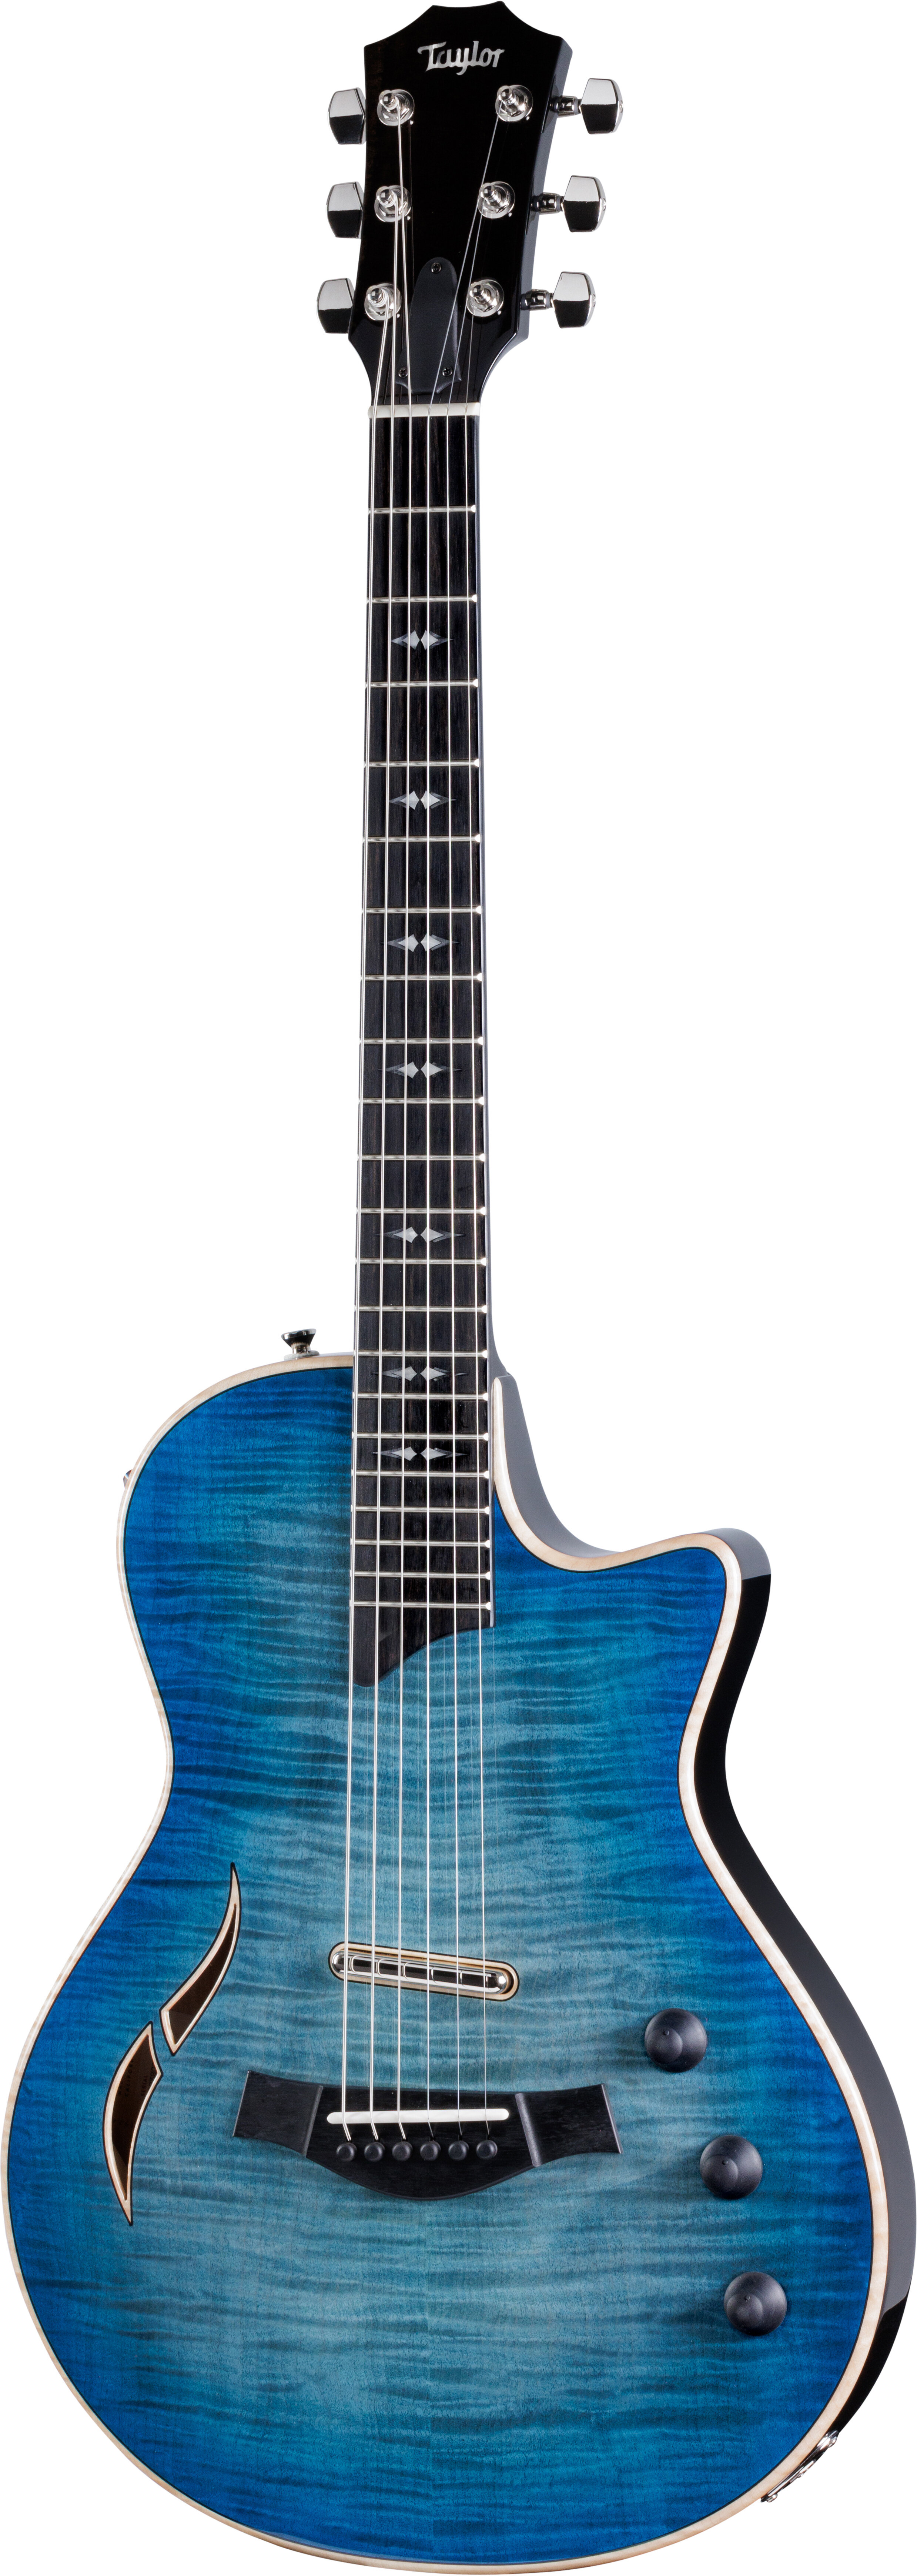 Taylor T5z Pro Armrest Electric Guitar Harbor Blue -  Taylor Guitars, T5z-Pro-Blue-Armrest